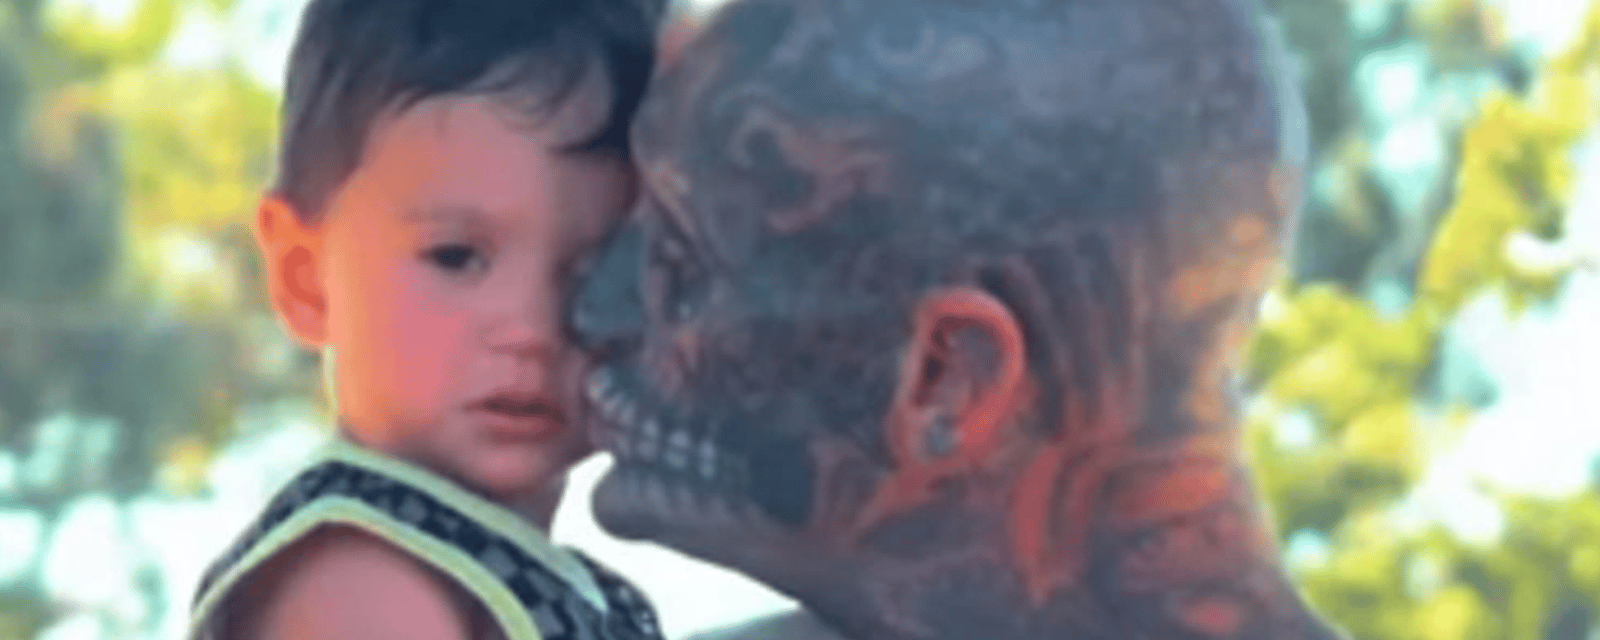 Un père dont le visage est recouvert de tatouages trouve ça difficile que les gens le jugent